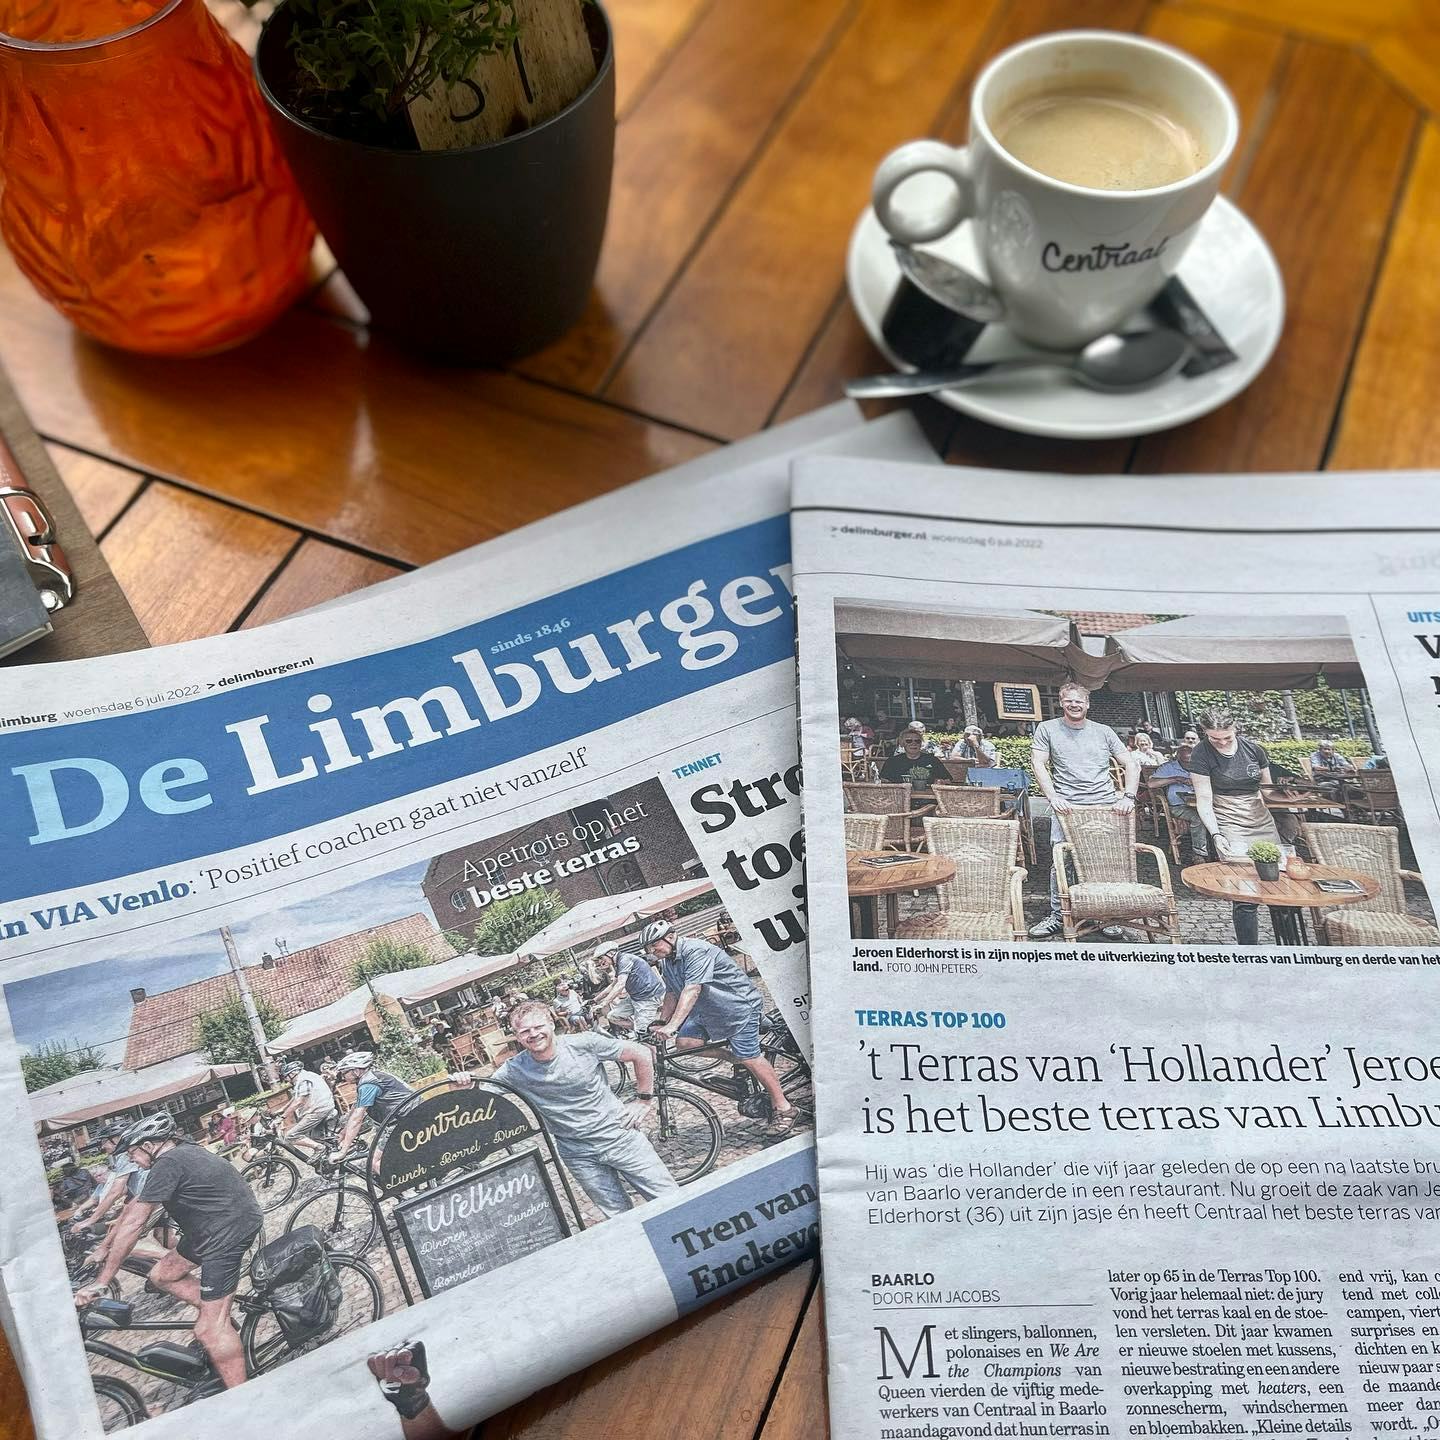 Dagblad De Limburger over de derde plek van Centraal in Baarlo.